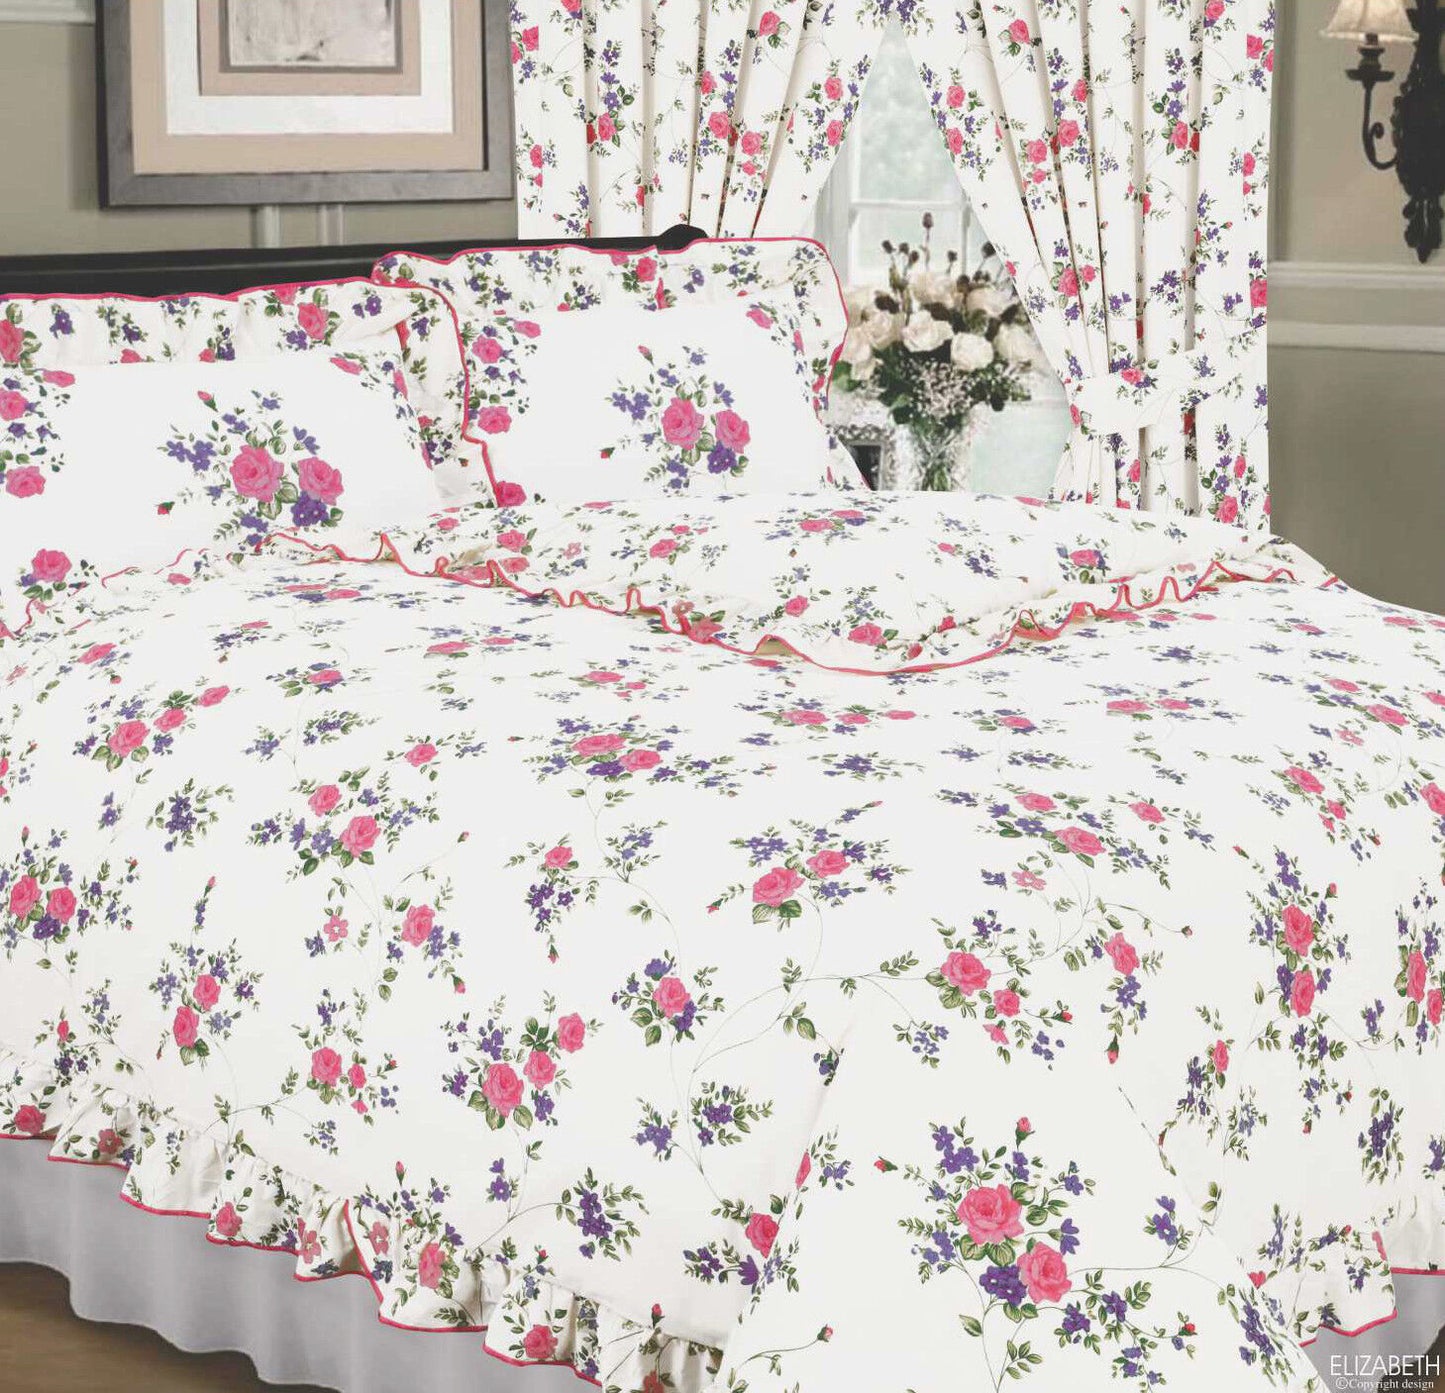 Super King Size Duvet Cover Set Elizabeth White Pink Floral Bedding